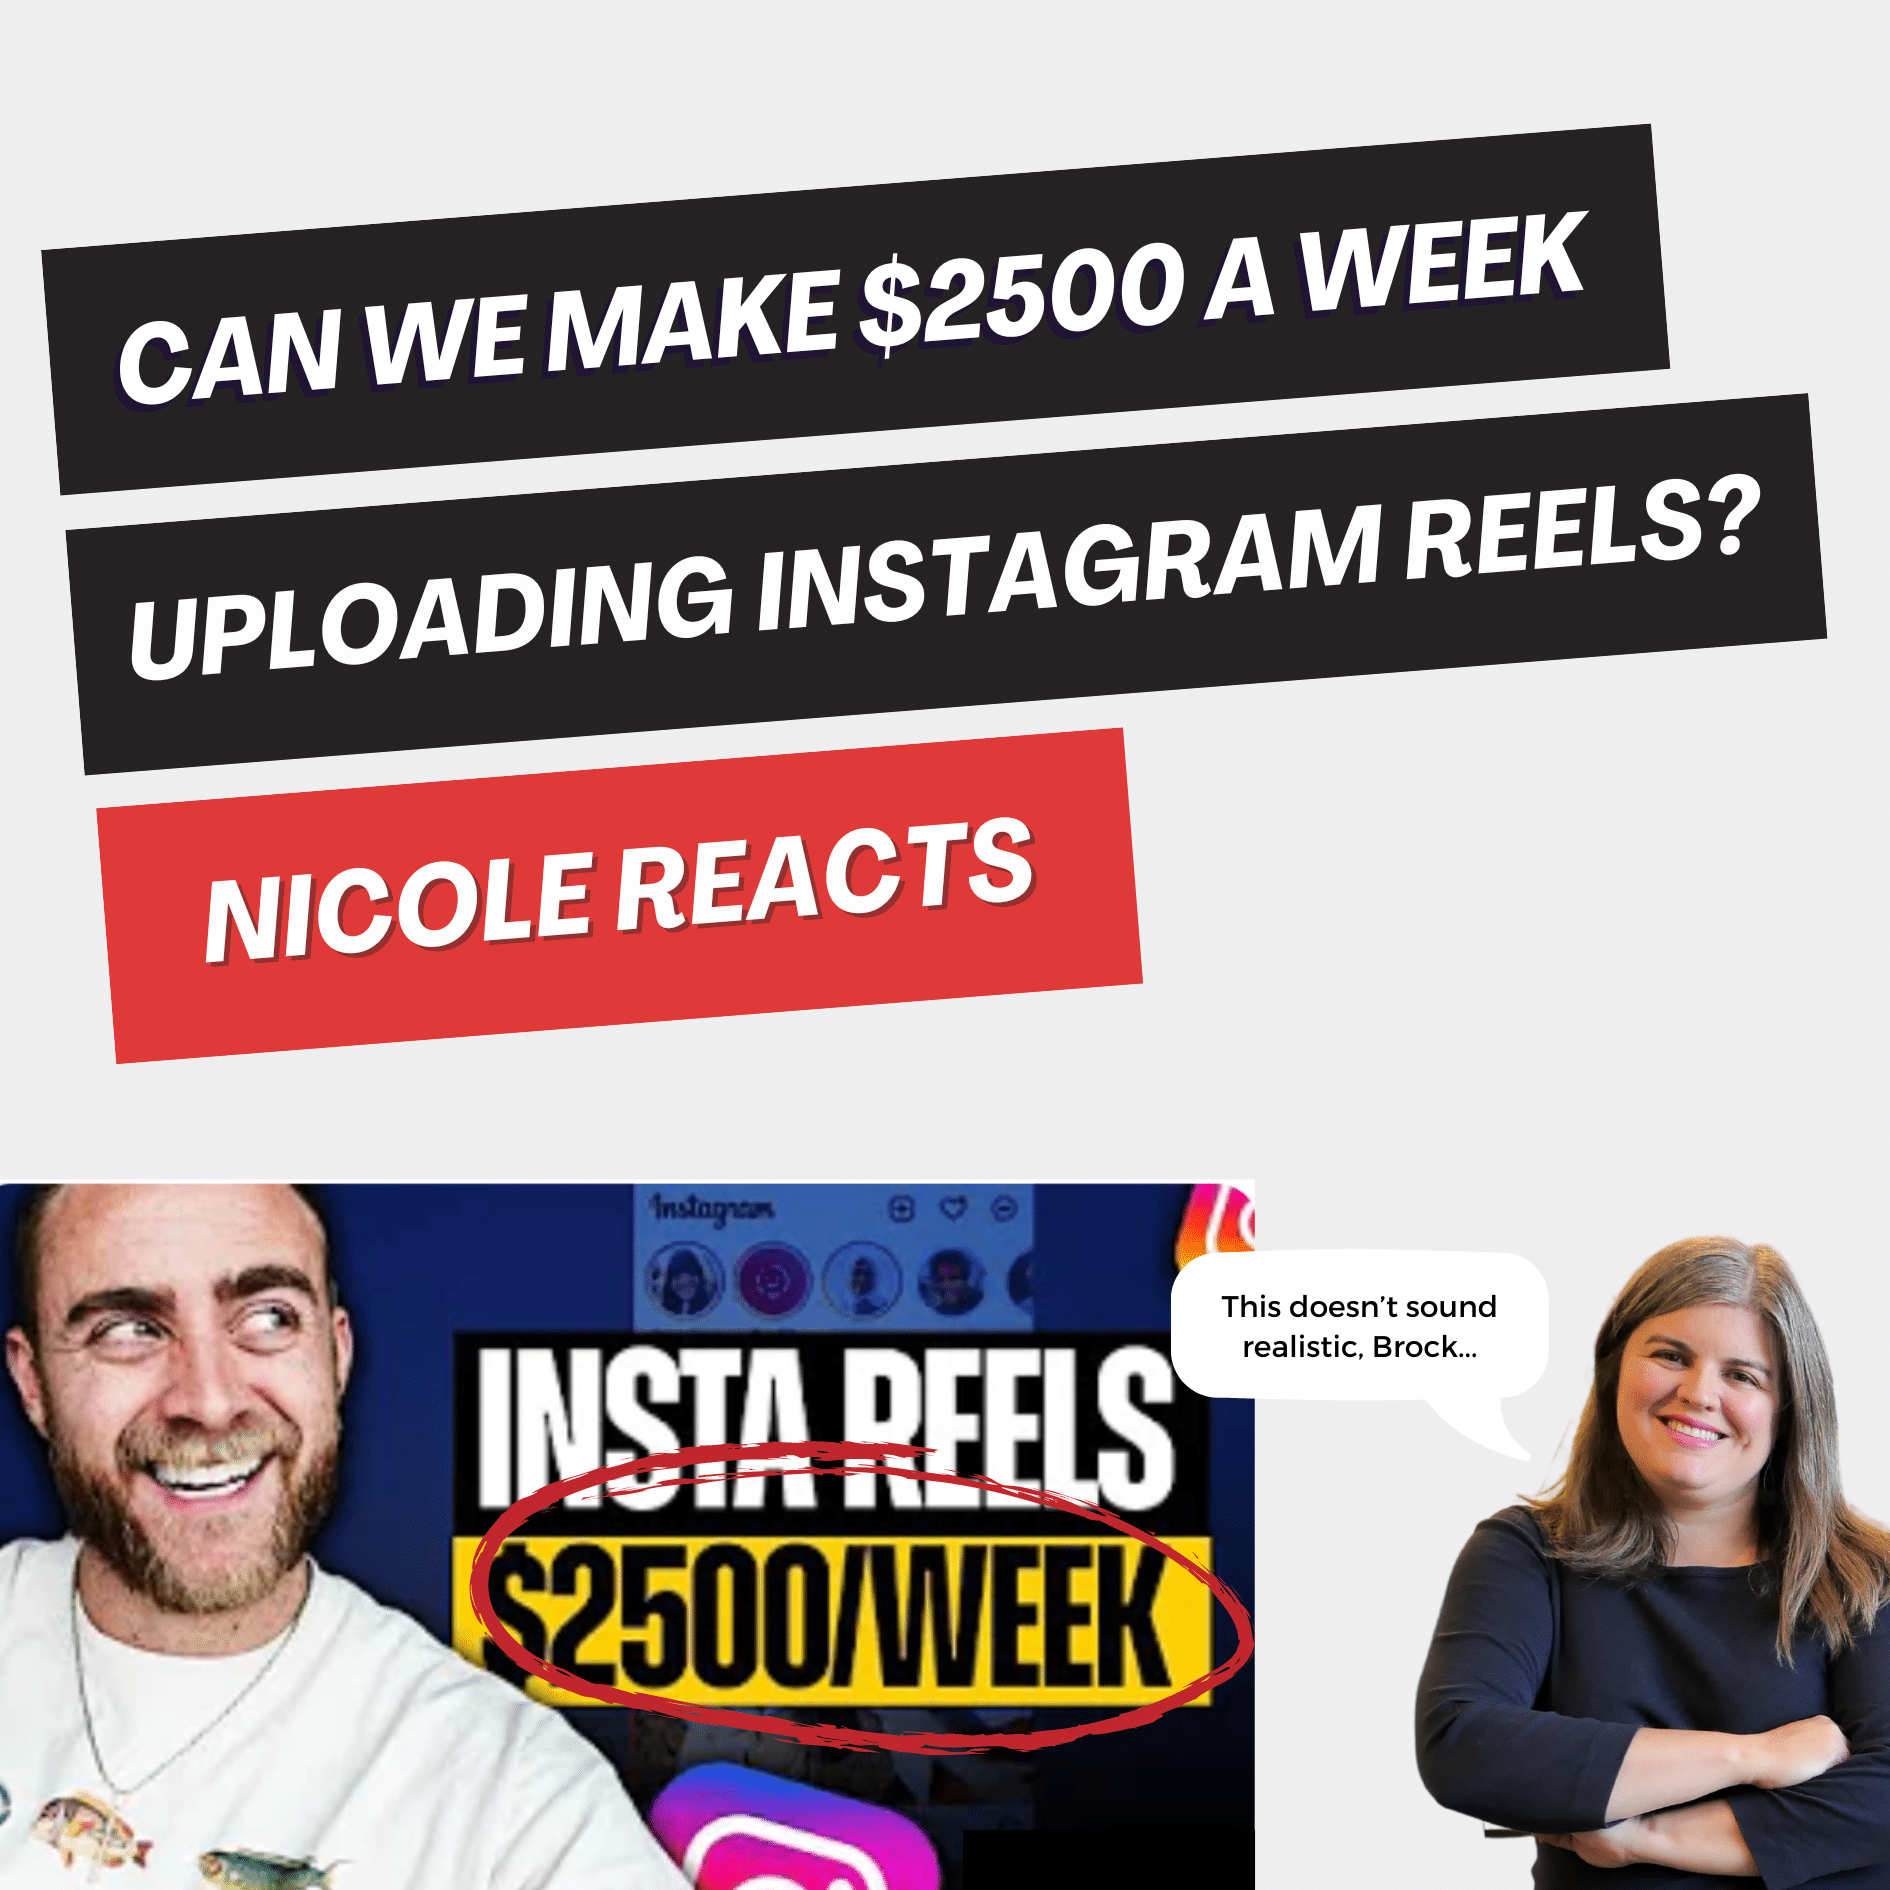 Nicole Reacts Brock Johnson implies we can make $2500 a week on Instagram  Reels